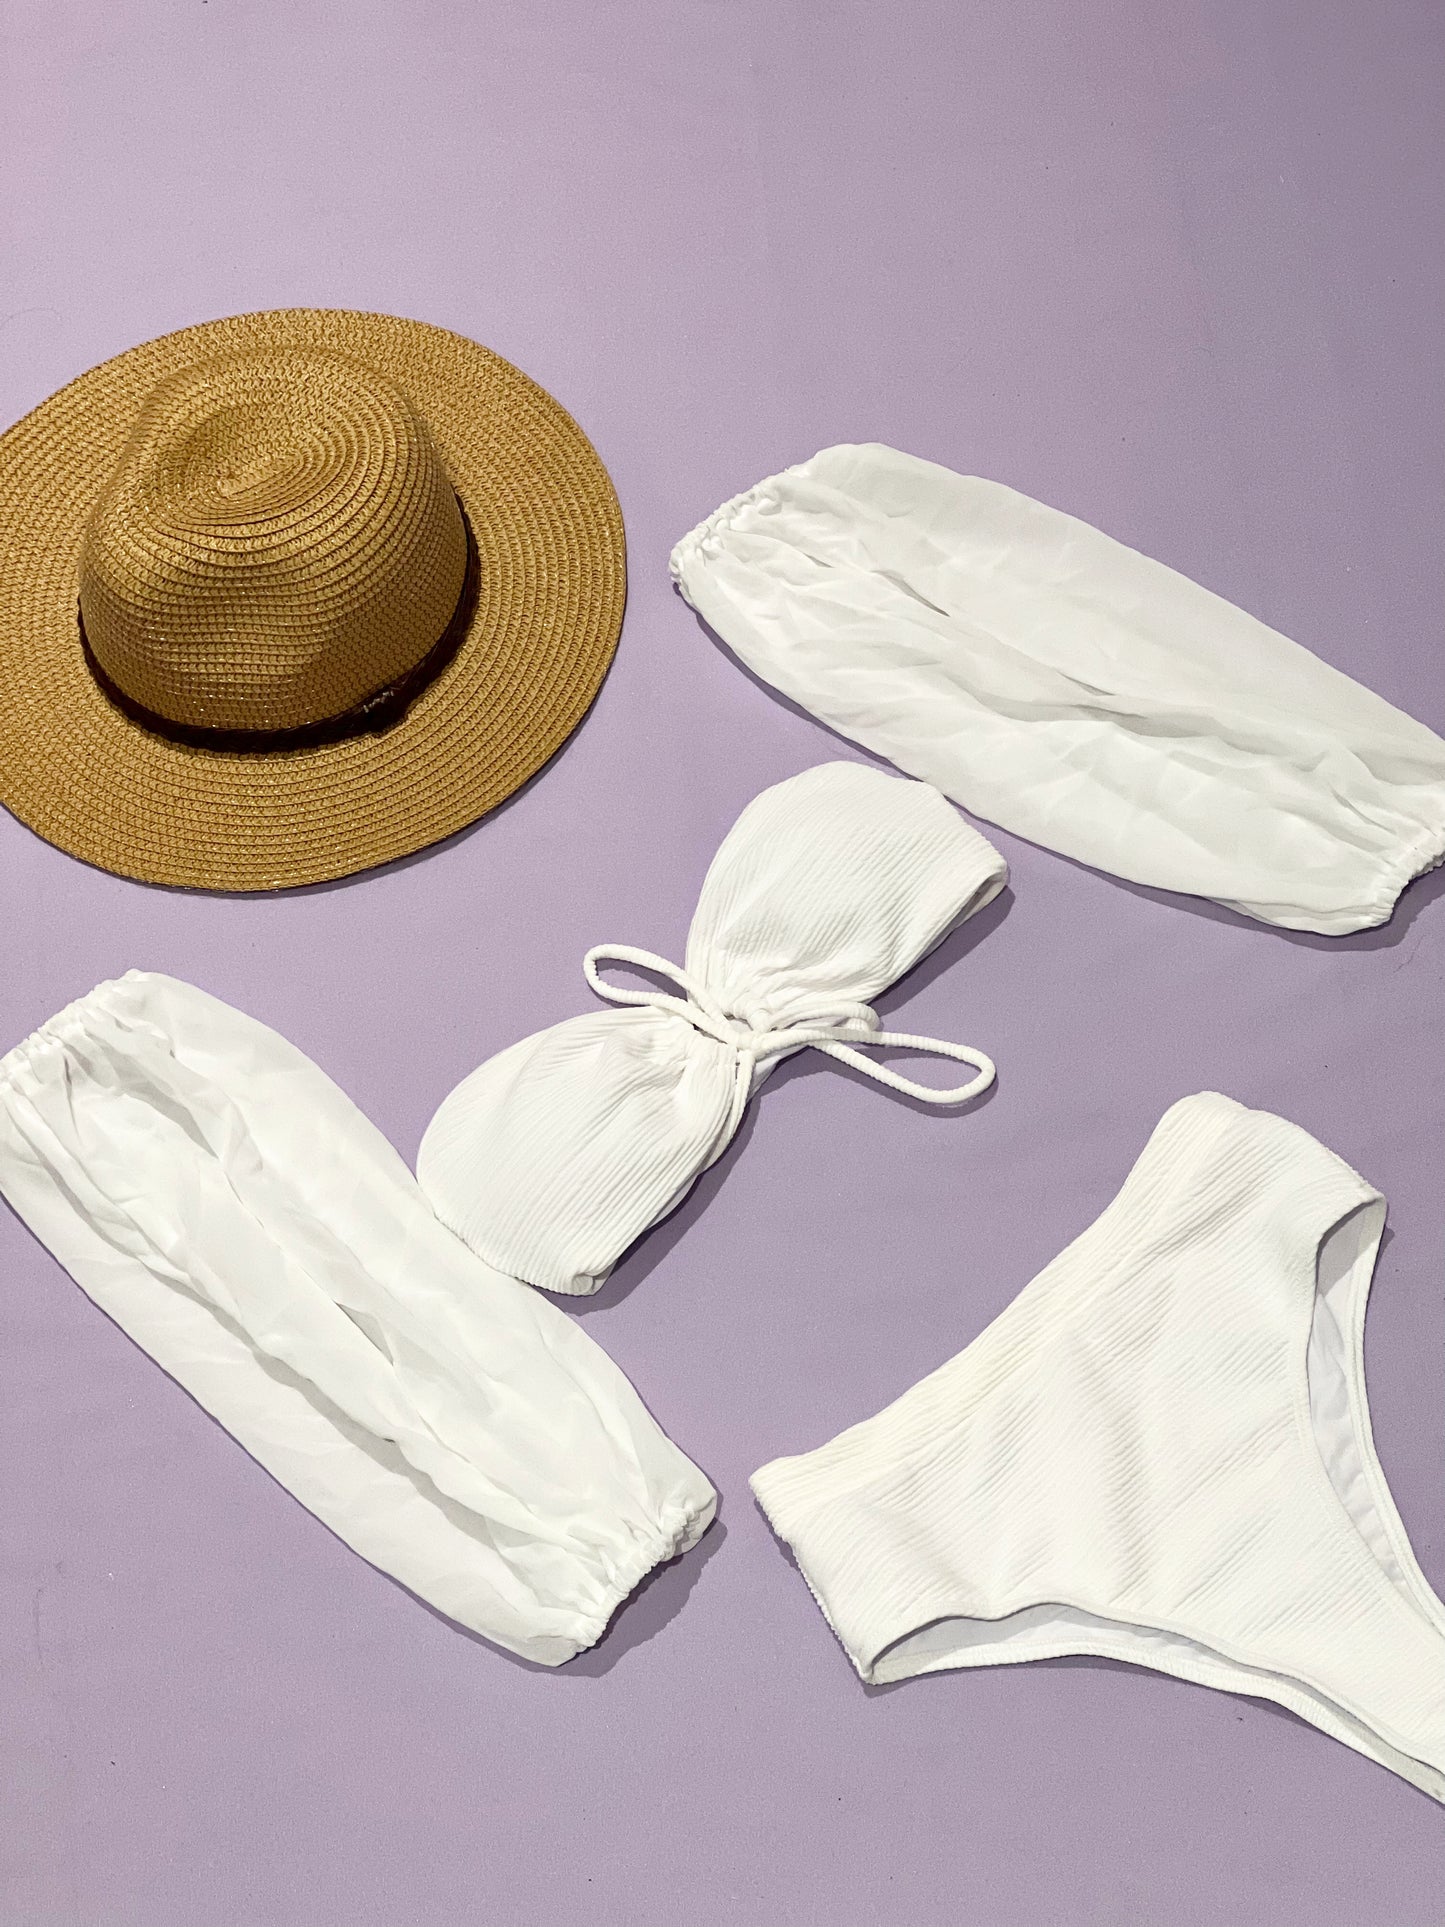 Traje de baño de tres piezas color blanco. Top, calzón y mangas adicionales. Ideal para tu despedida de soltera en la playa.